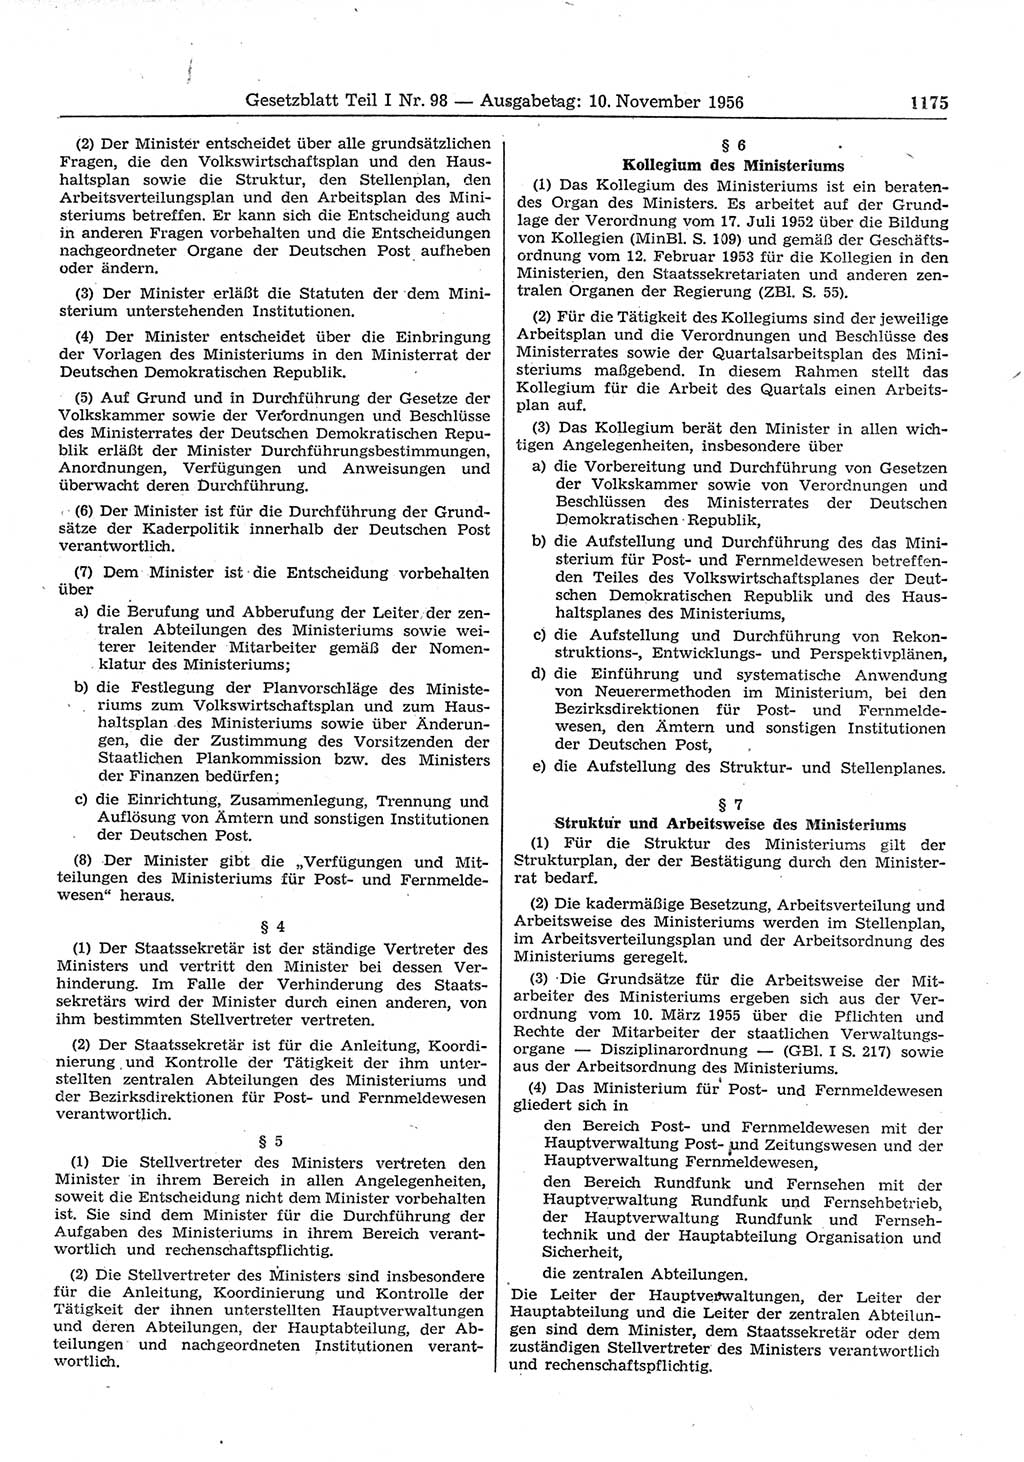 Gesetzblatt (GBl.) der Deutschen Demokratischen Republik (DDR) Teil Ⅰ 1956, Seite 1175 (GBl. DDR Ⅰ 1956, S. 1175)